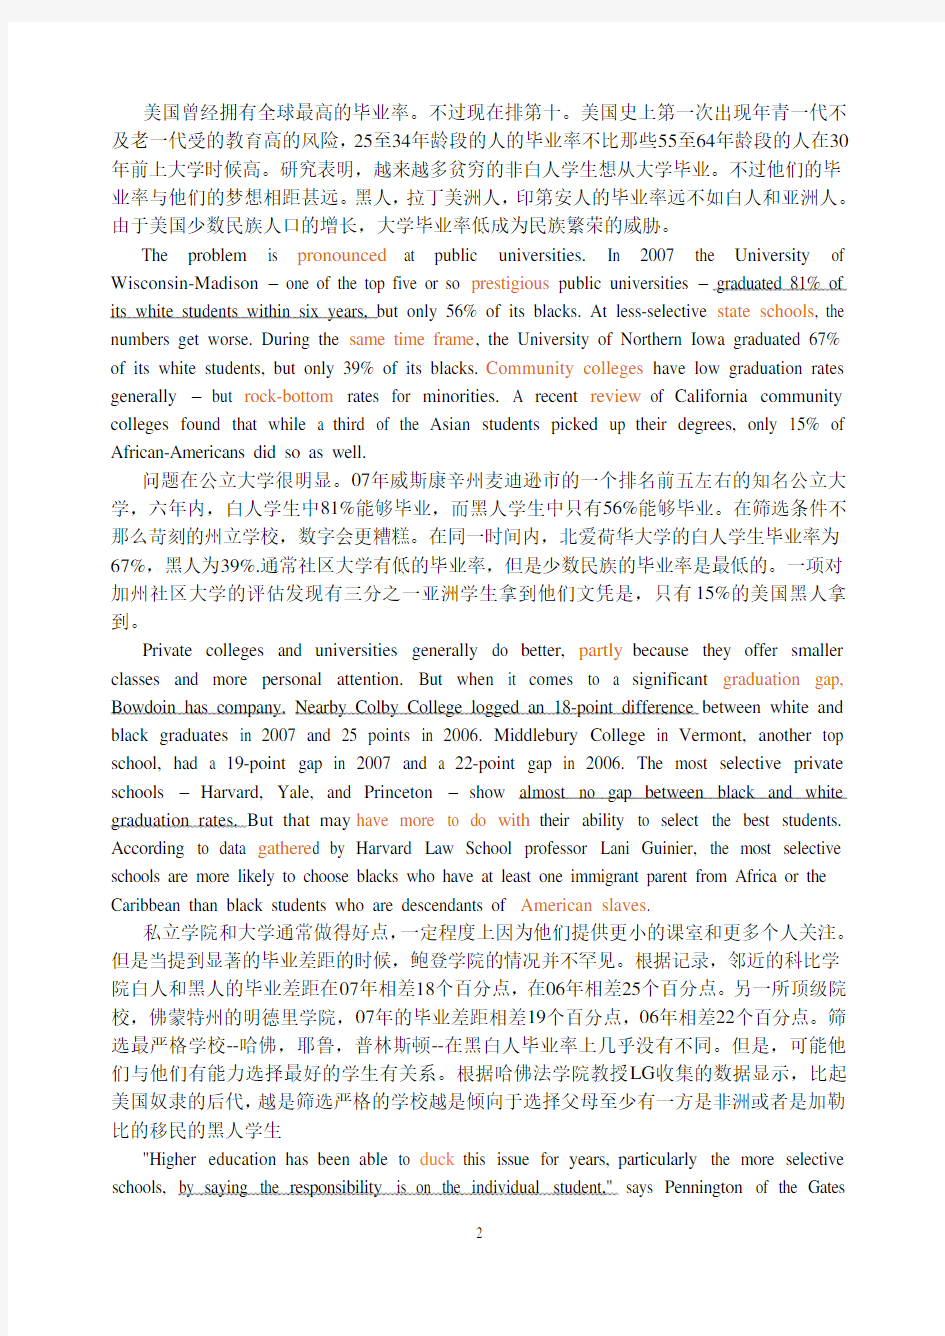 2011年06月六级真题 阅读部分 全文翻译 中英对译